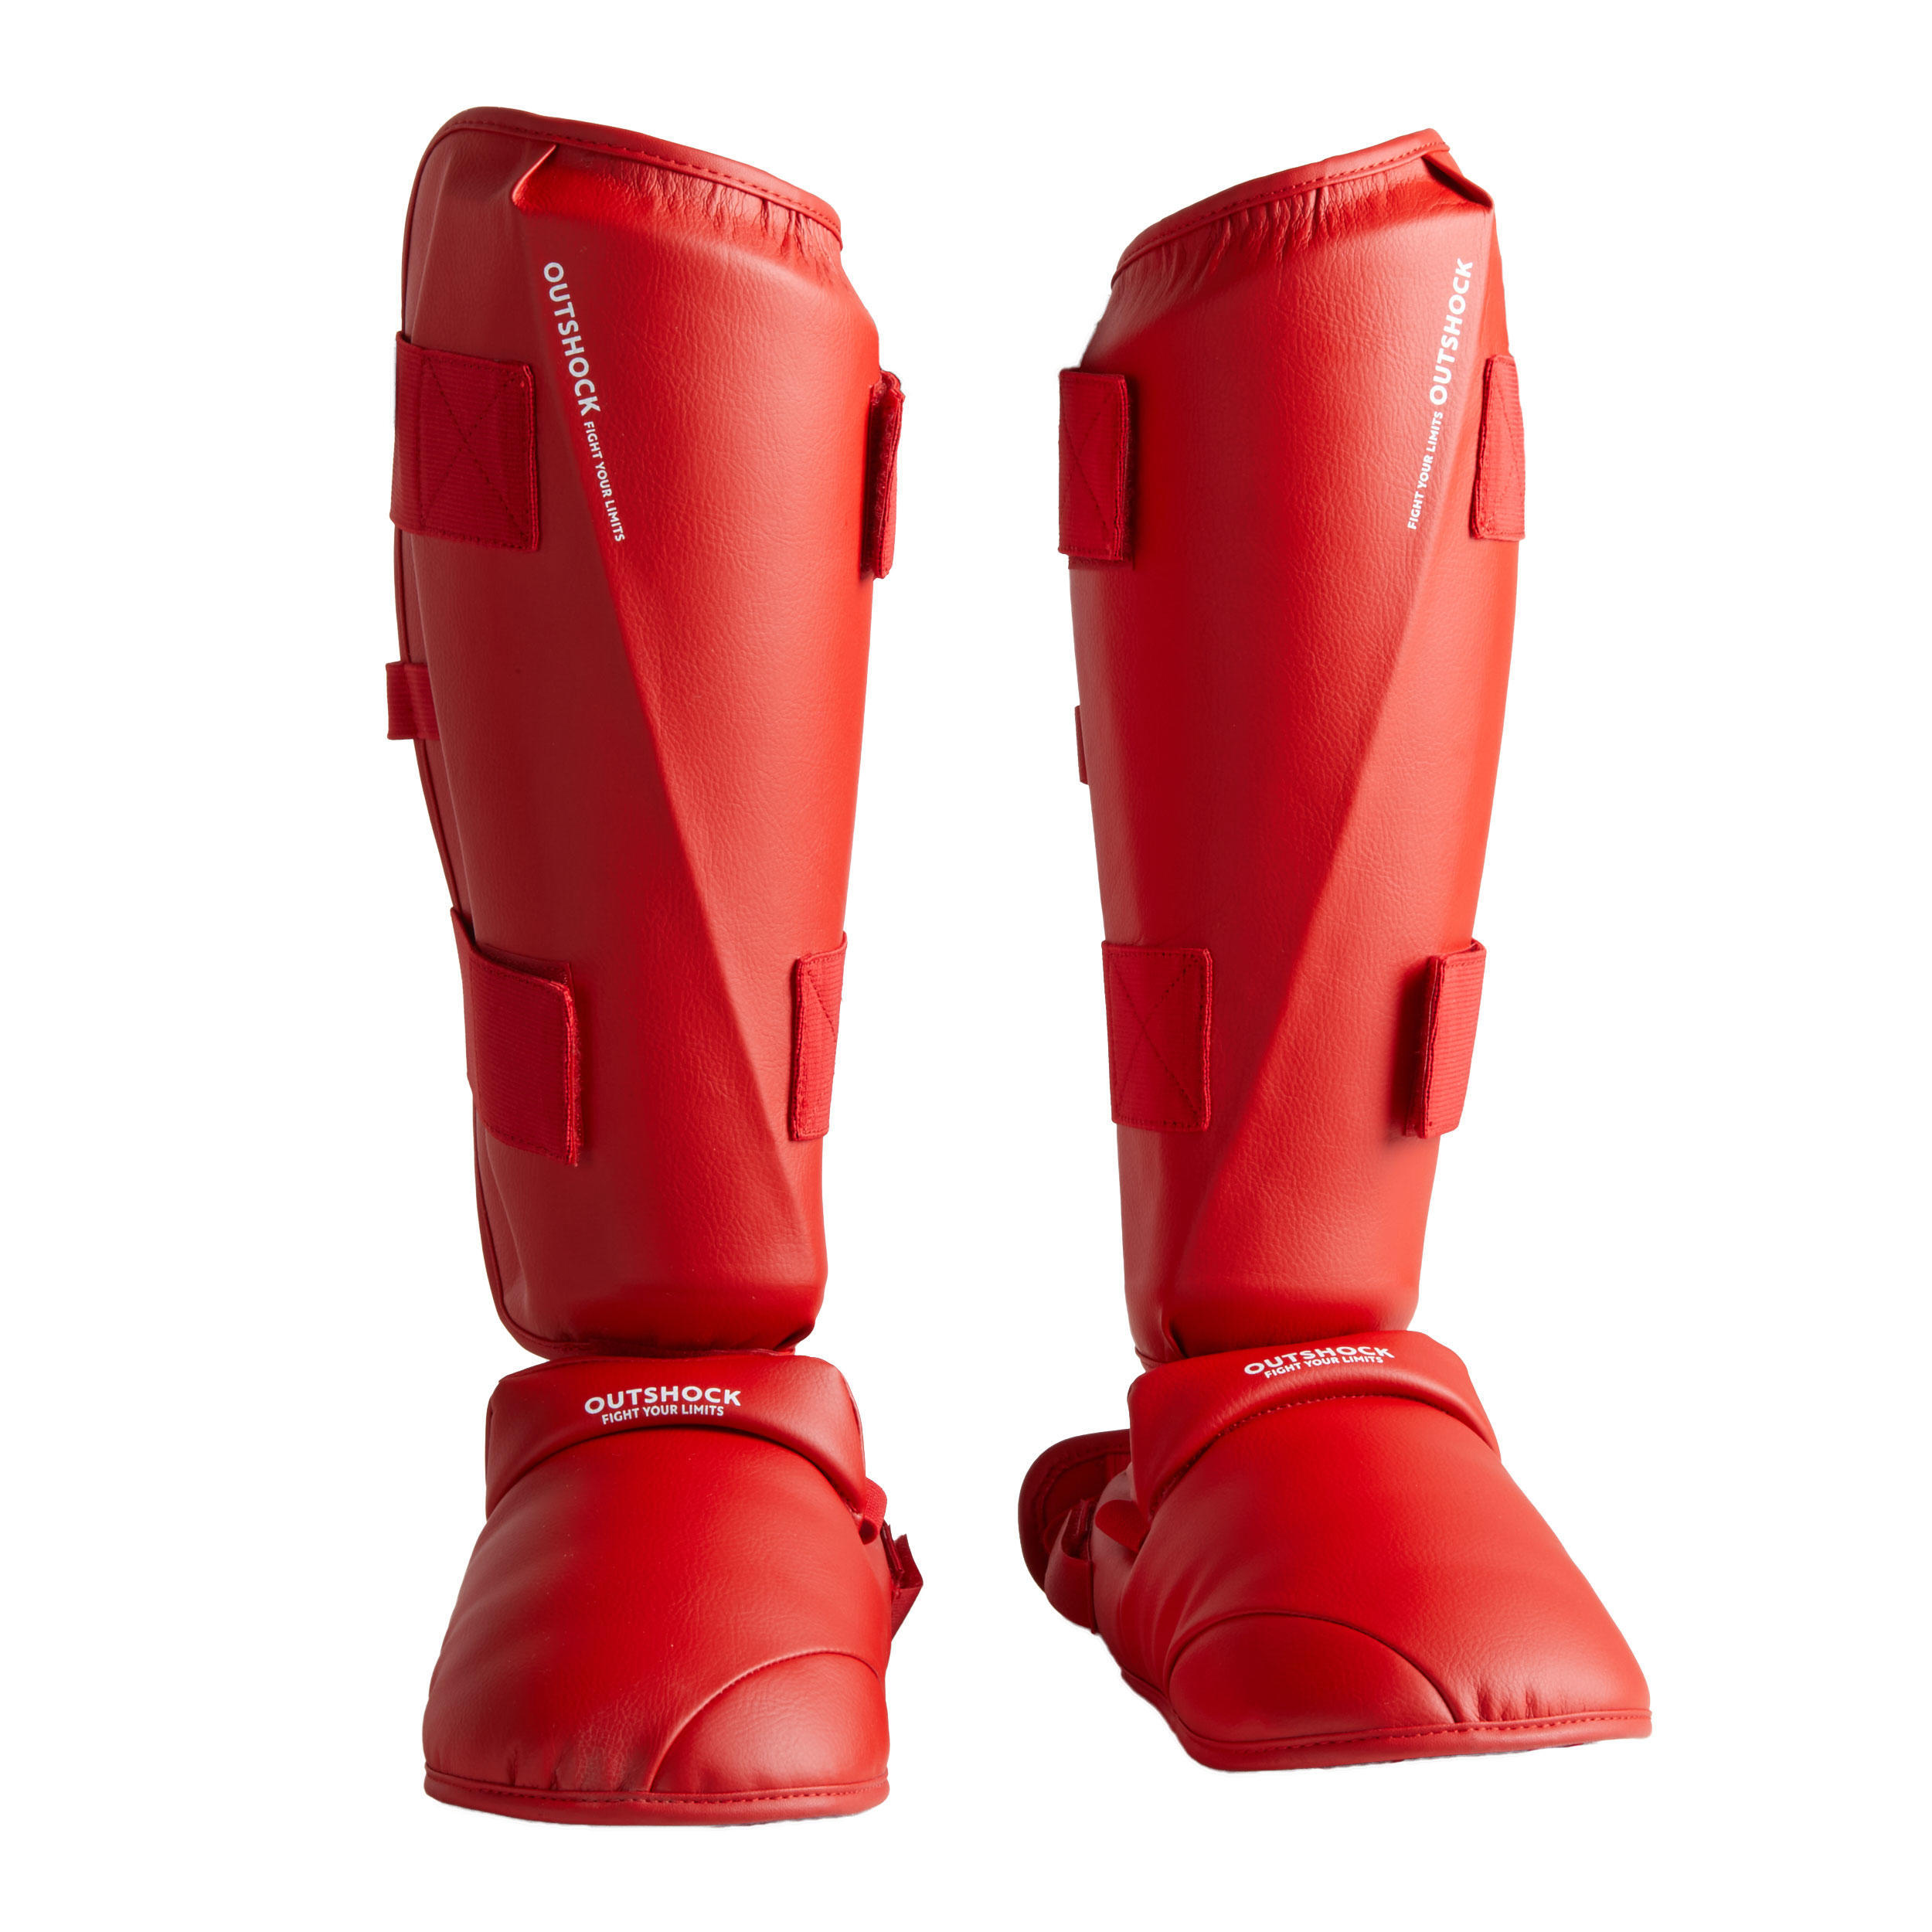 Защита голени и стопы Outshock Karate 900, красный